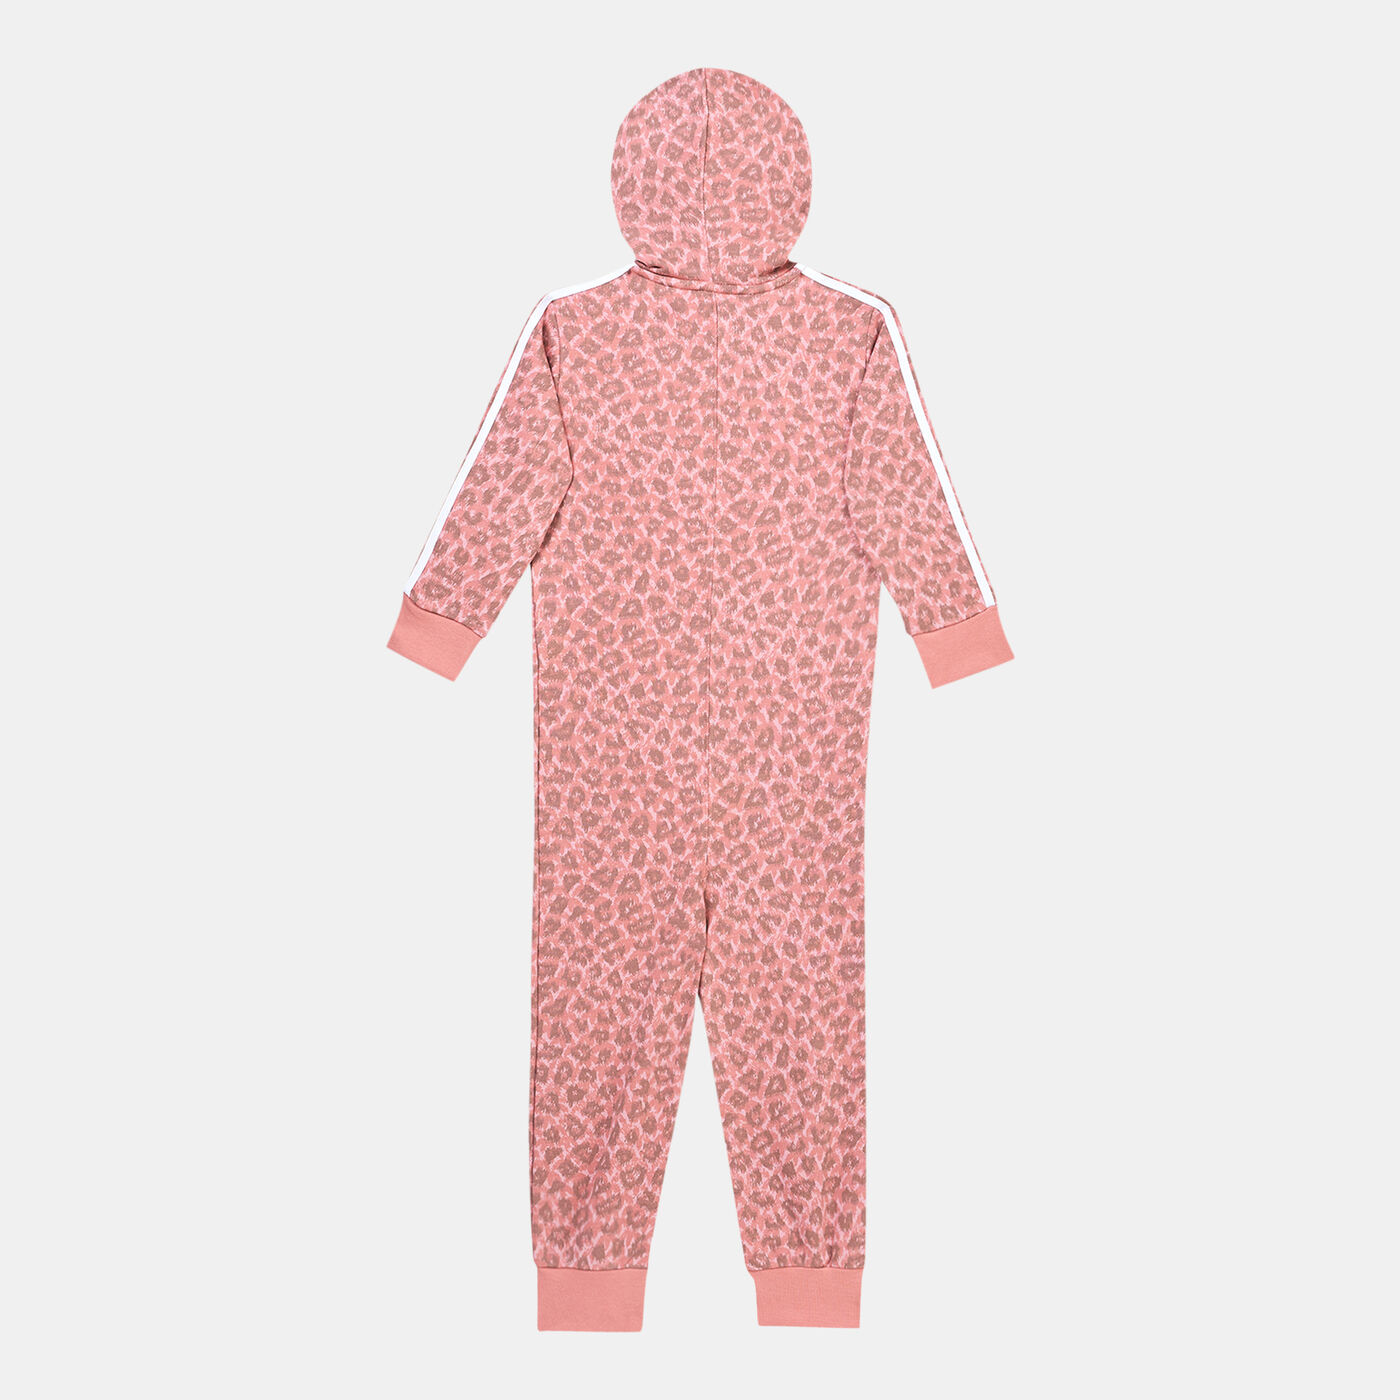 Kids' Animal Allover Print Hooded Bodysuit